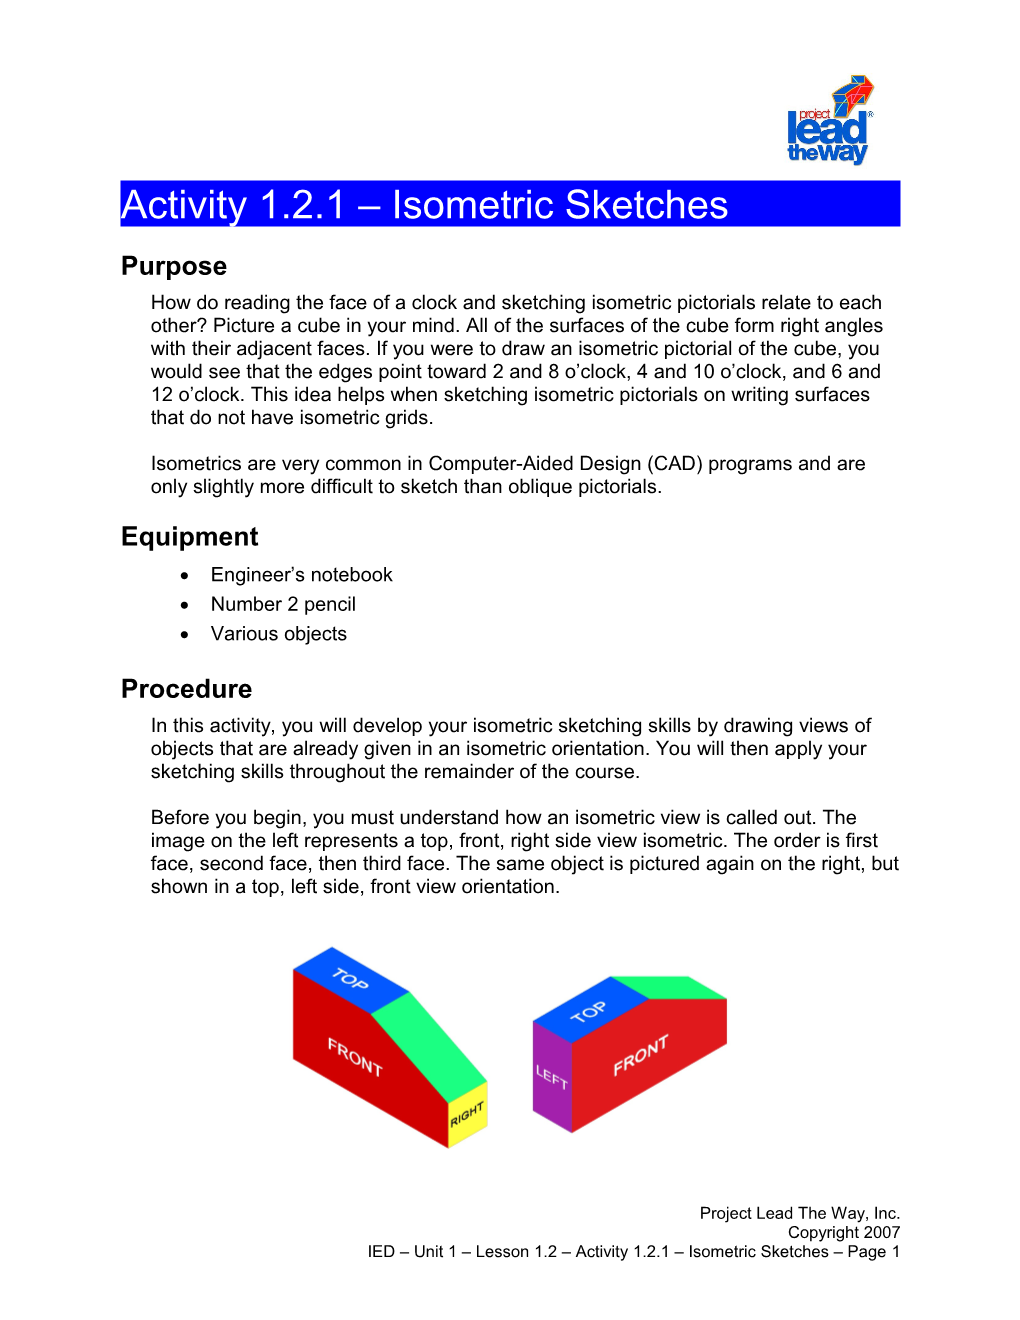 Activity 1.2.1:Isometric Sketches